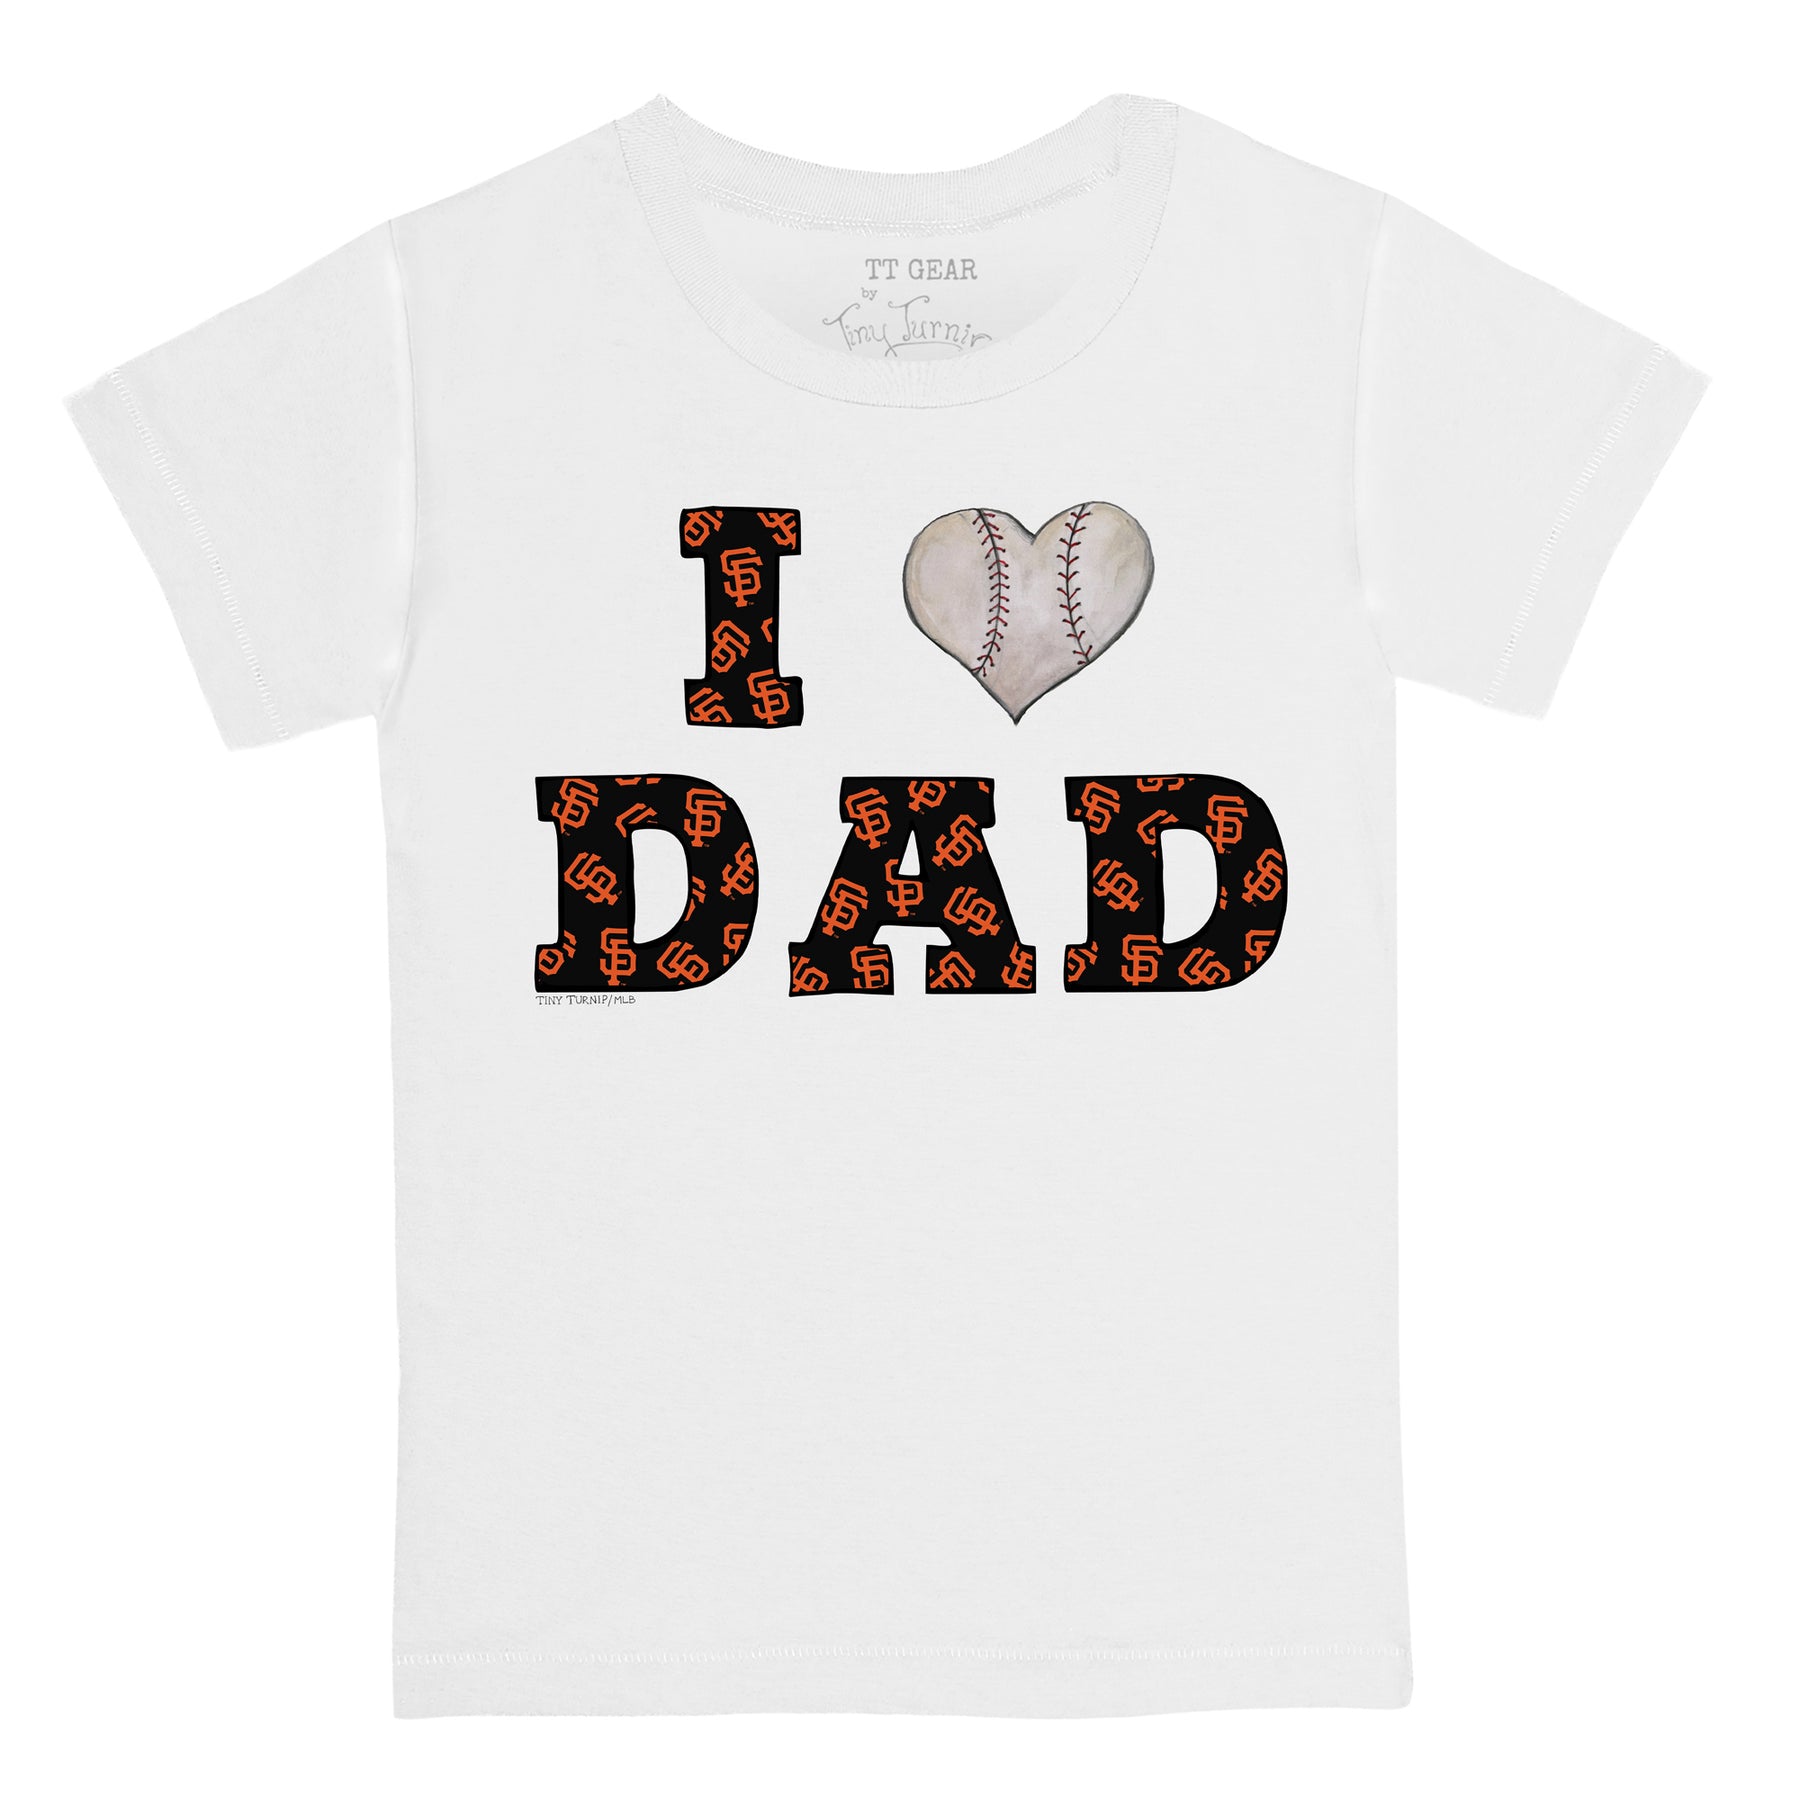 San Francisco Giants I Love Dad Tee Shirt